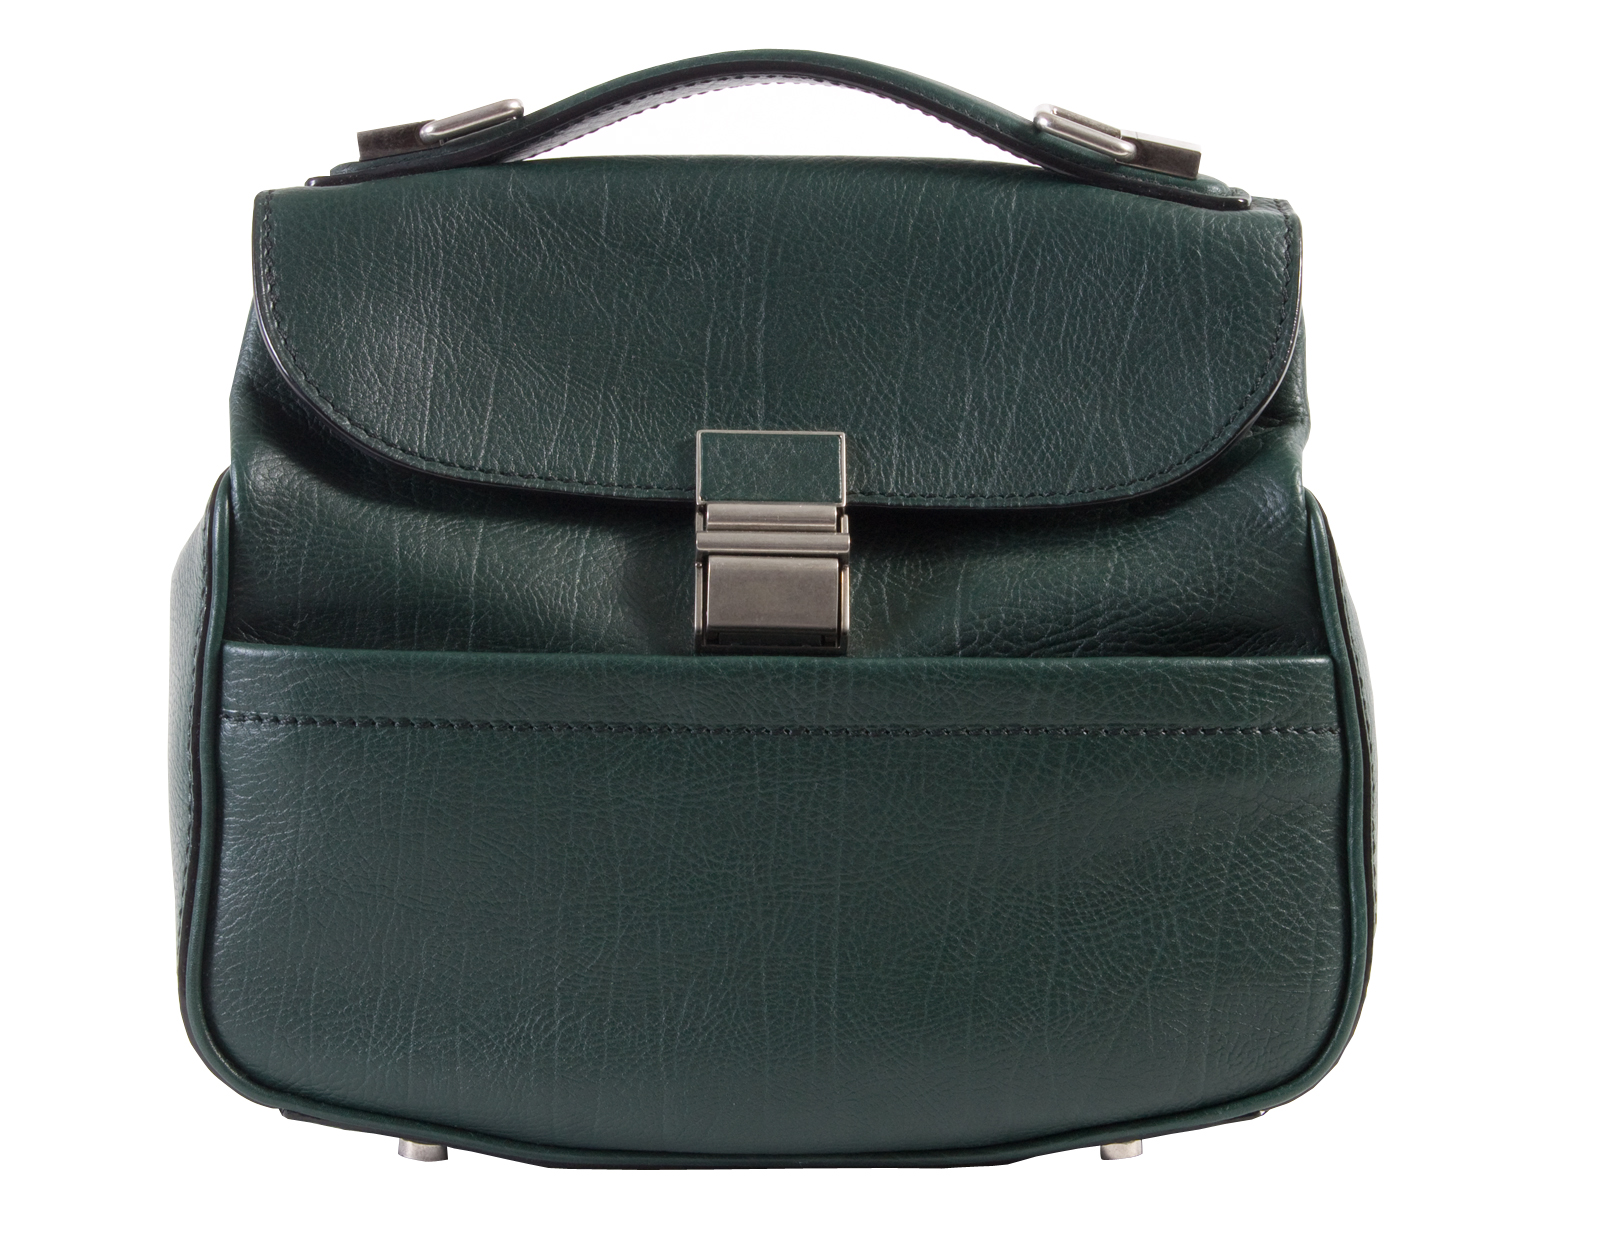 Proenza Schouler mini leather &quot;Kent&quot; bag in dark pine